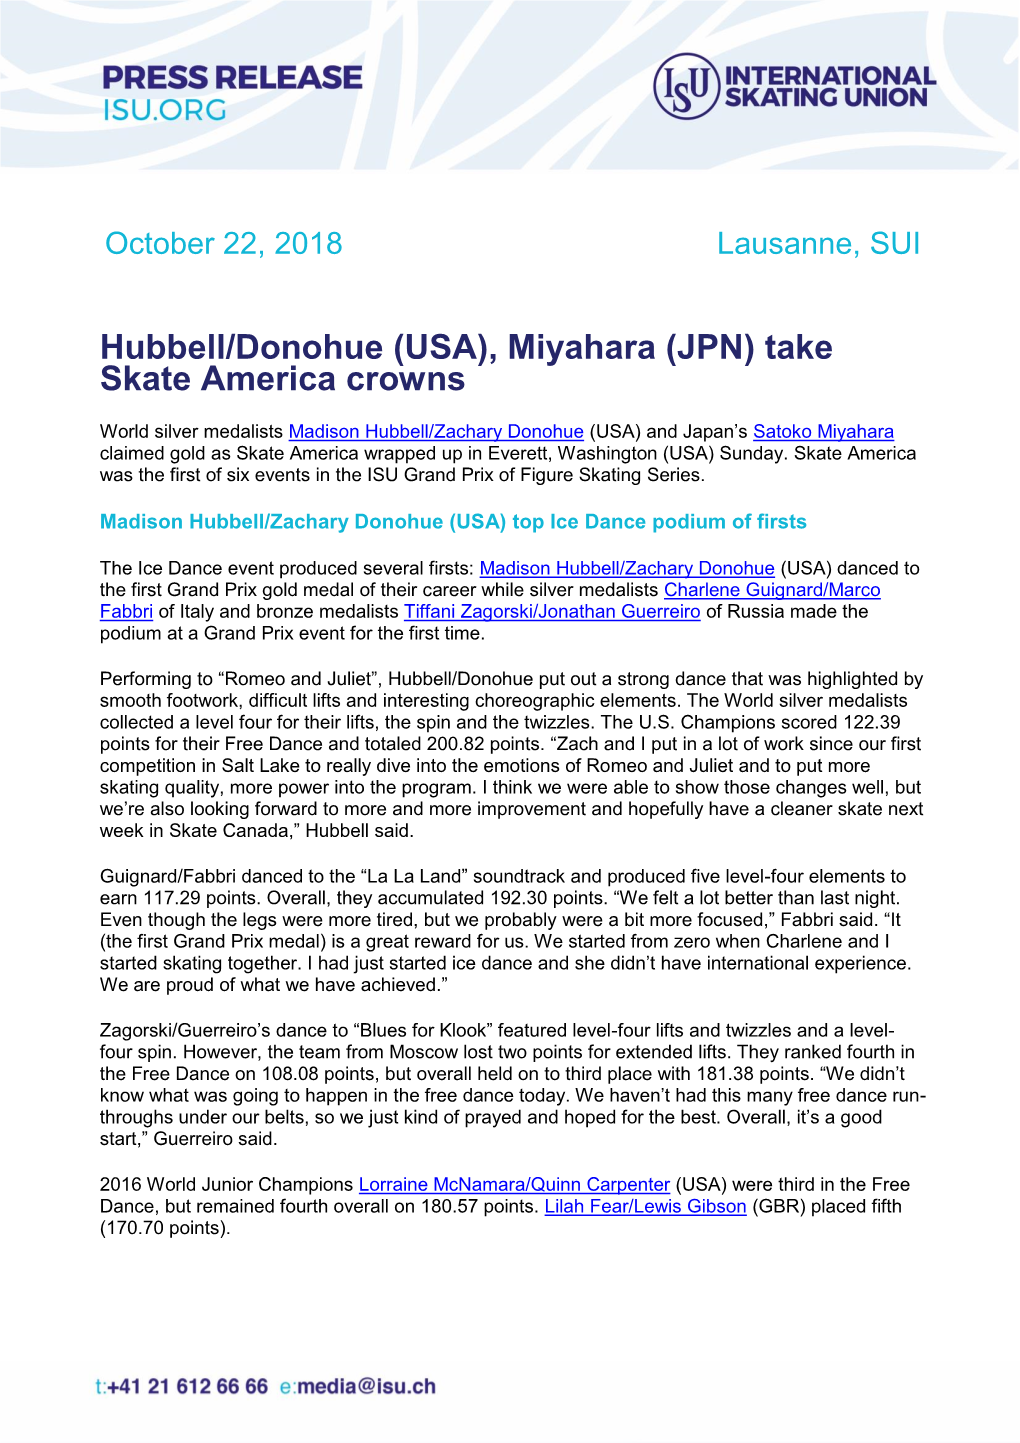 Hubbell/Donohue (USA), Miyahara (JPN) Take Skate America Crowns